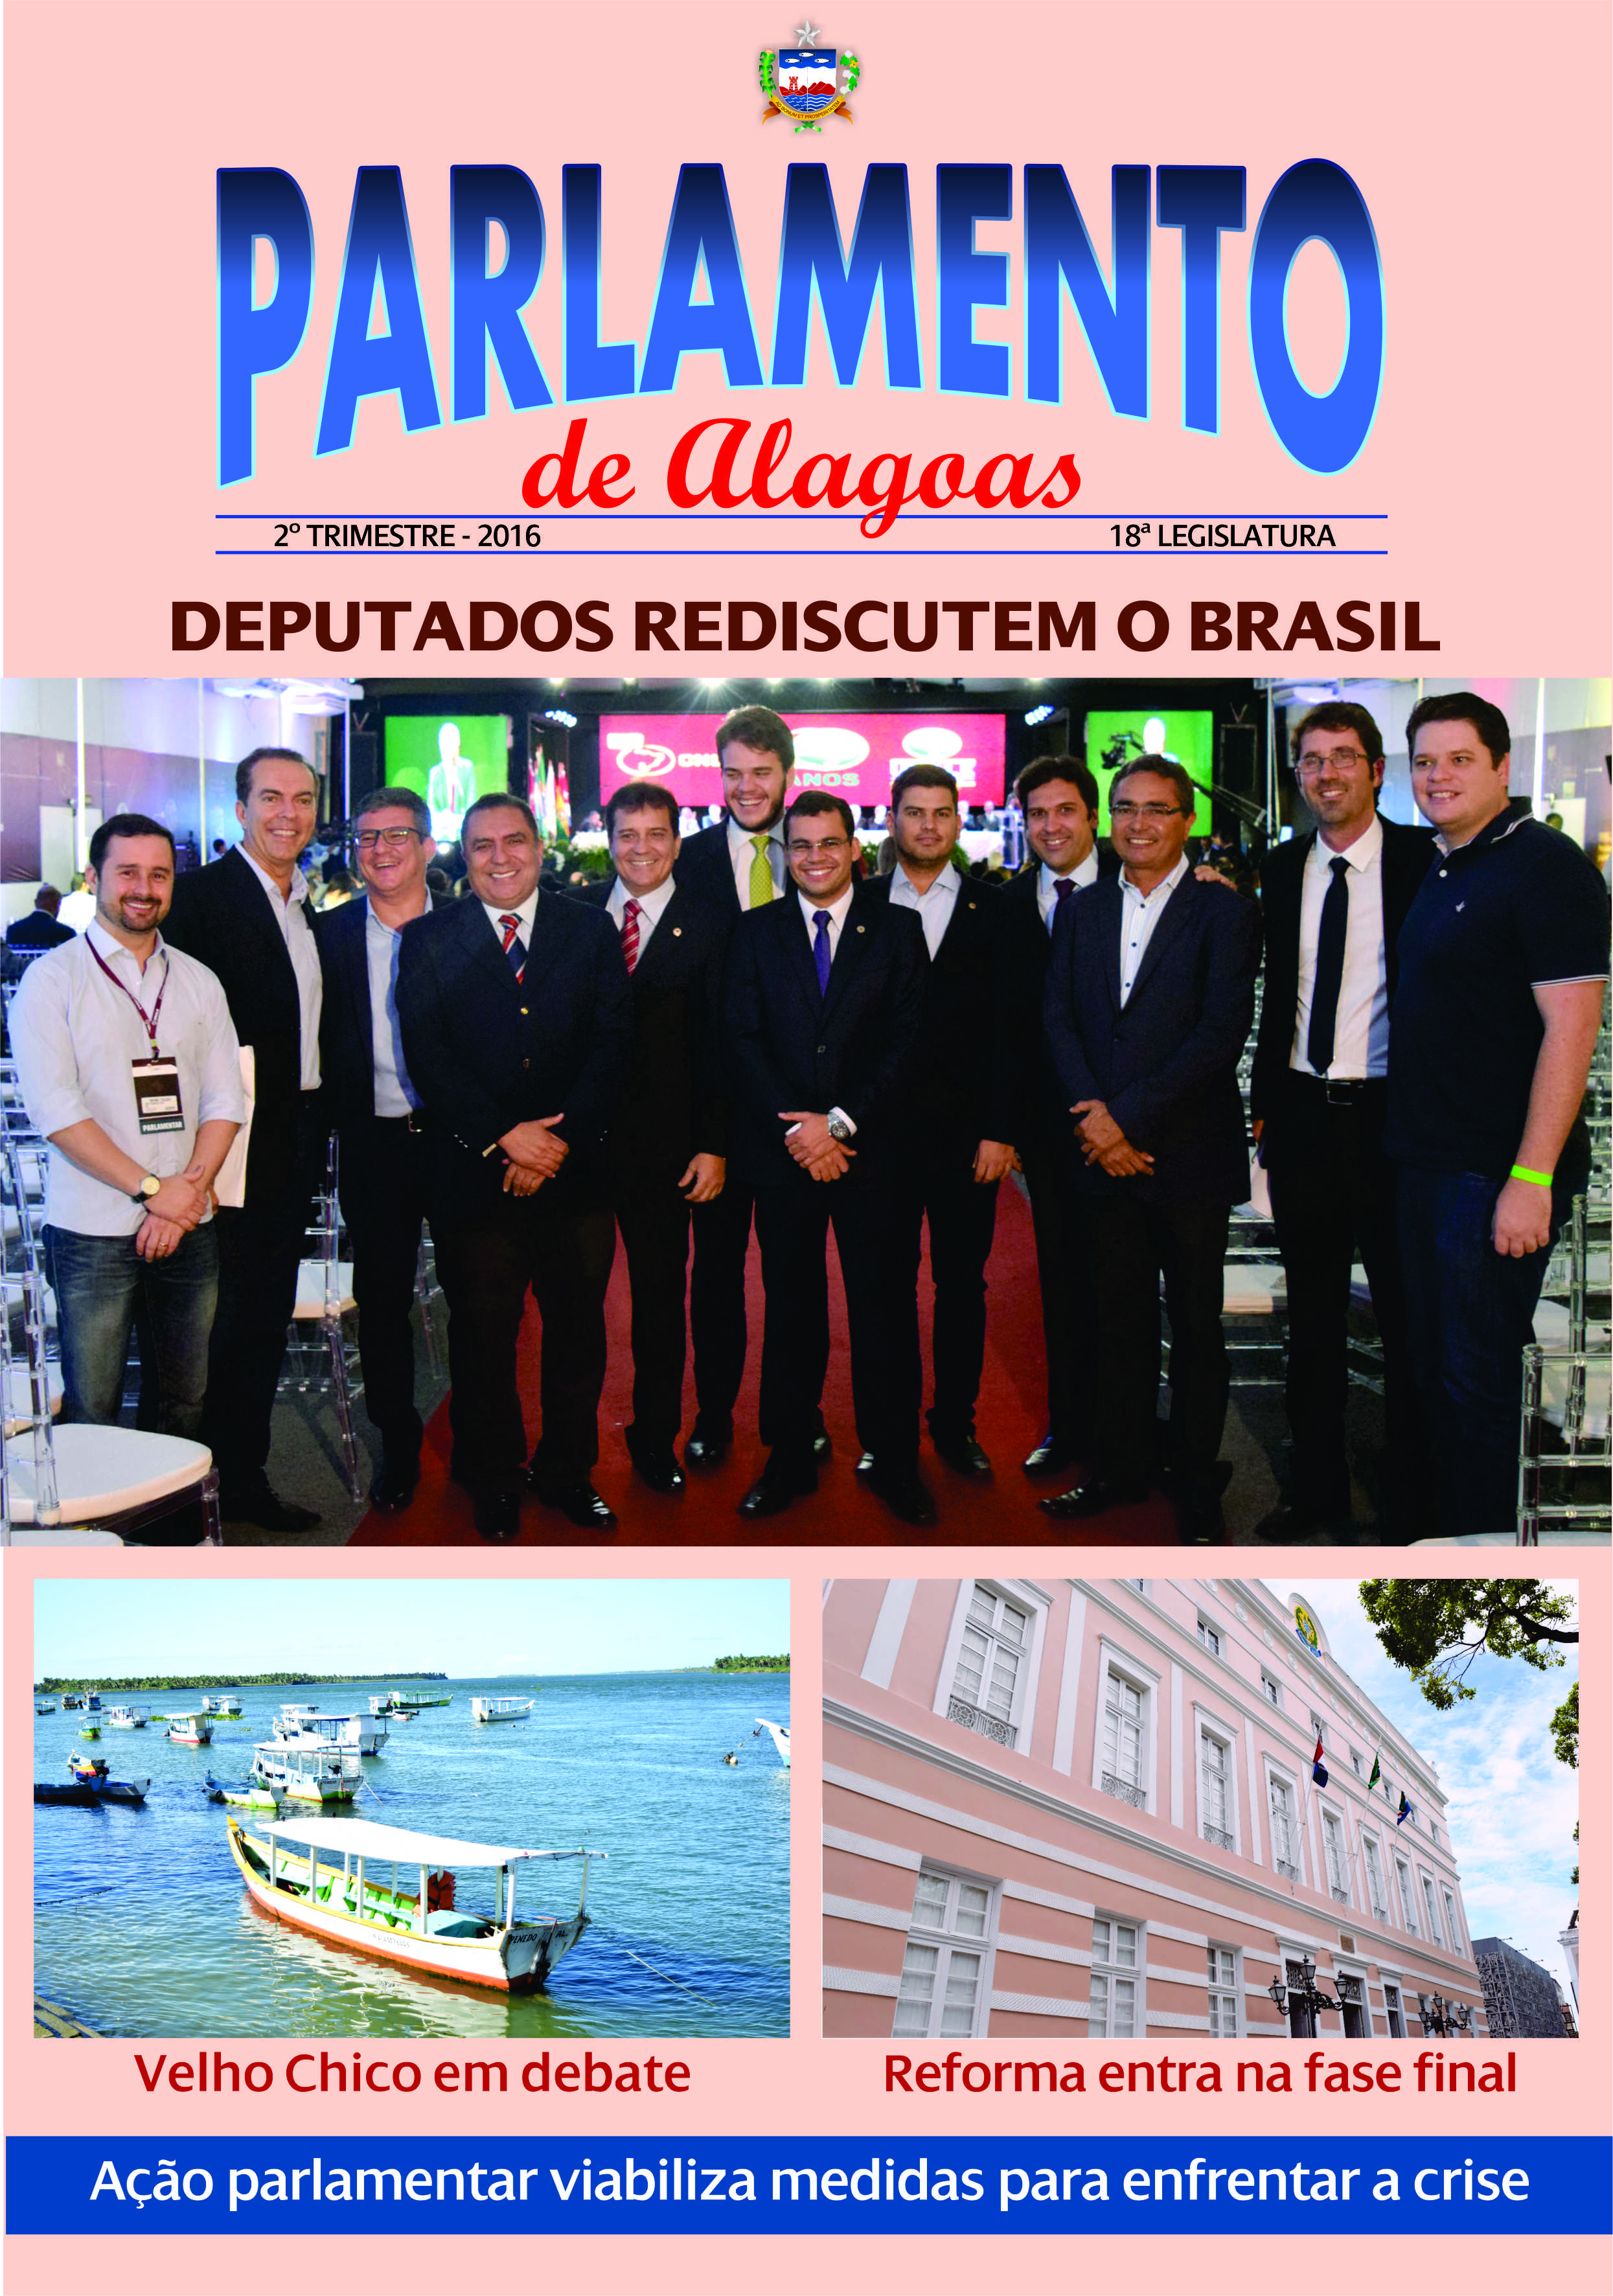 Nova edição da revista Parlamento de Alagoas está em circulação